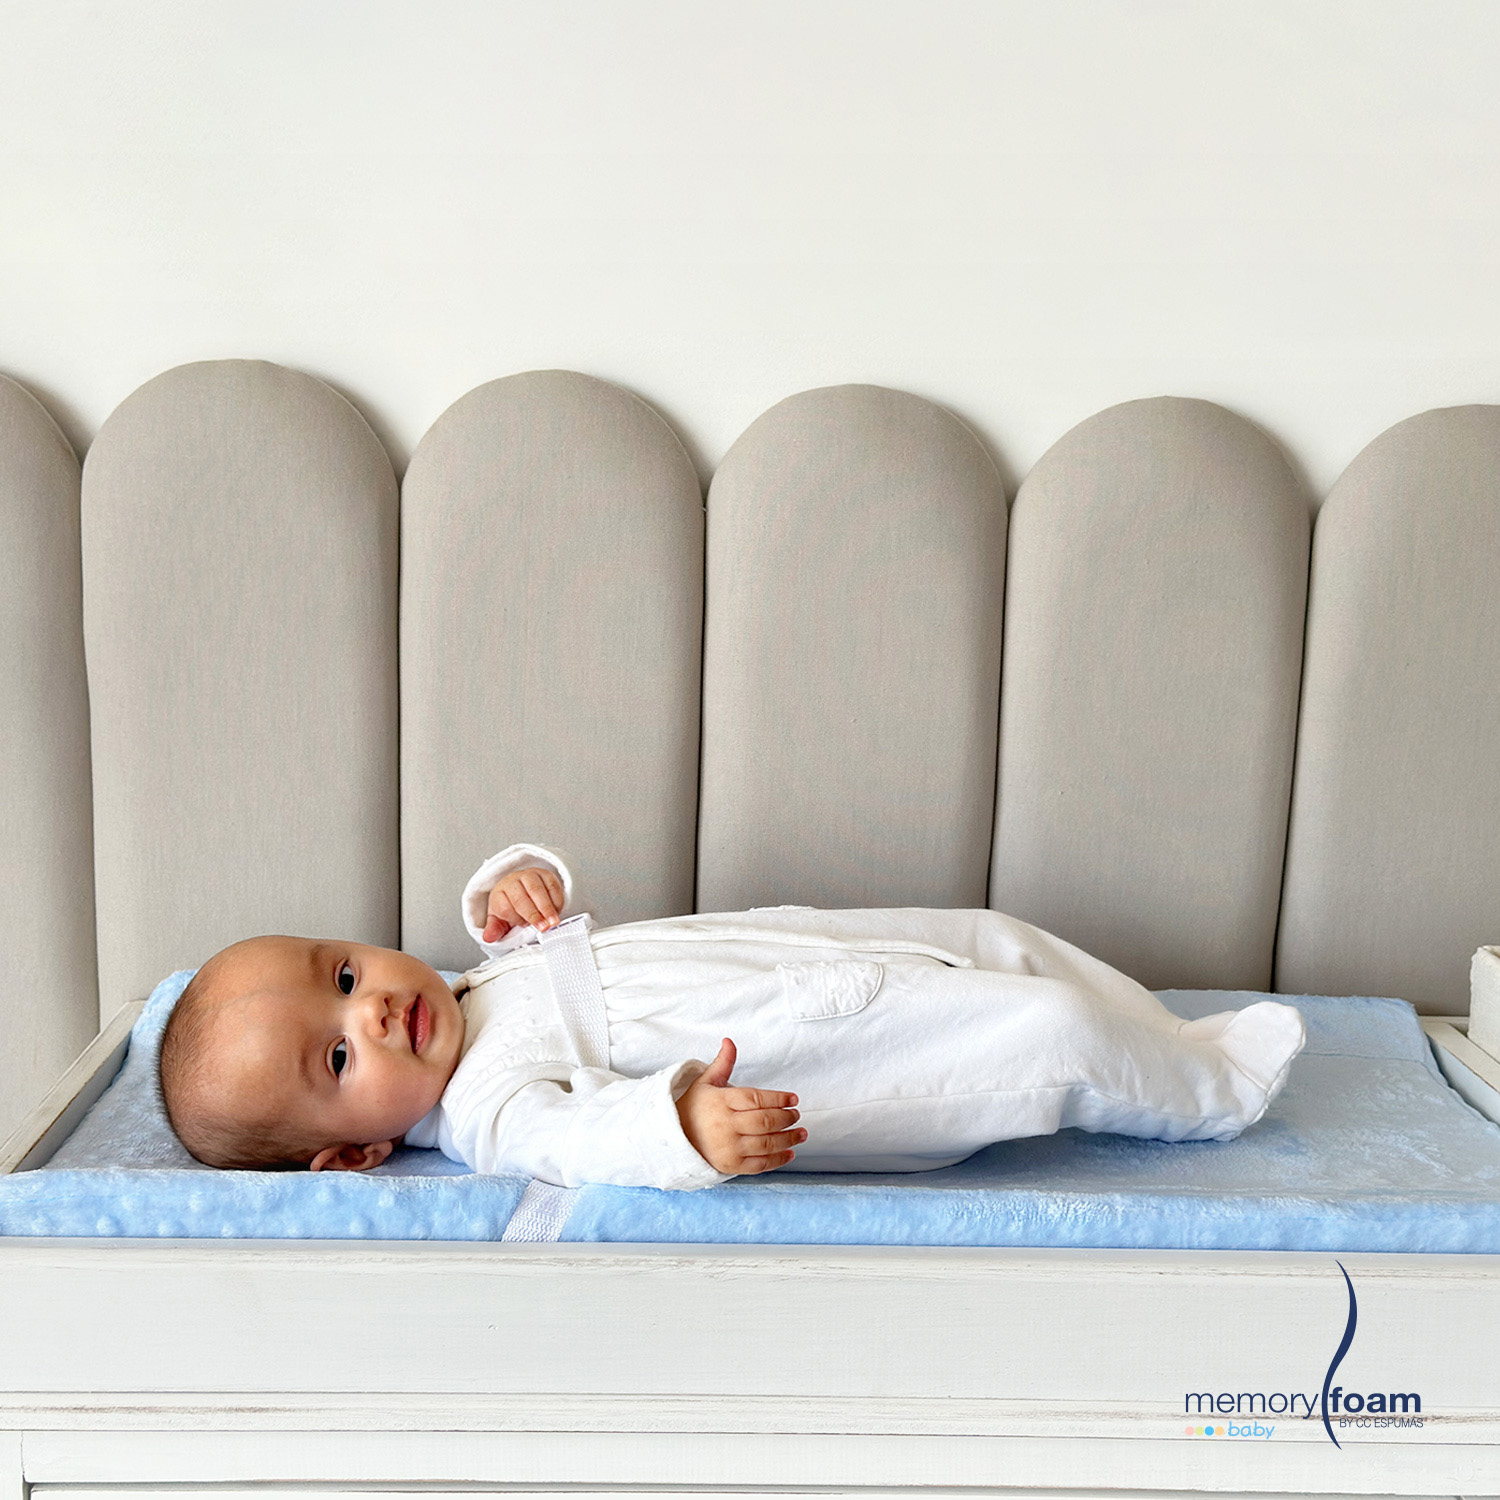 MEMORY FOAM BABY  Colchón Cambiador para Bebé – Seguro y Cómodo